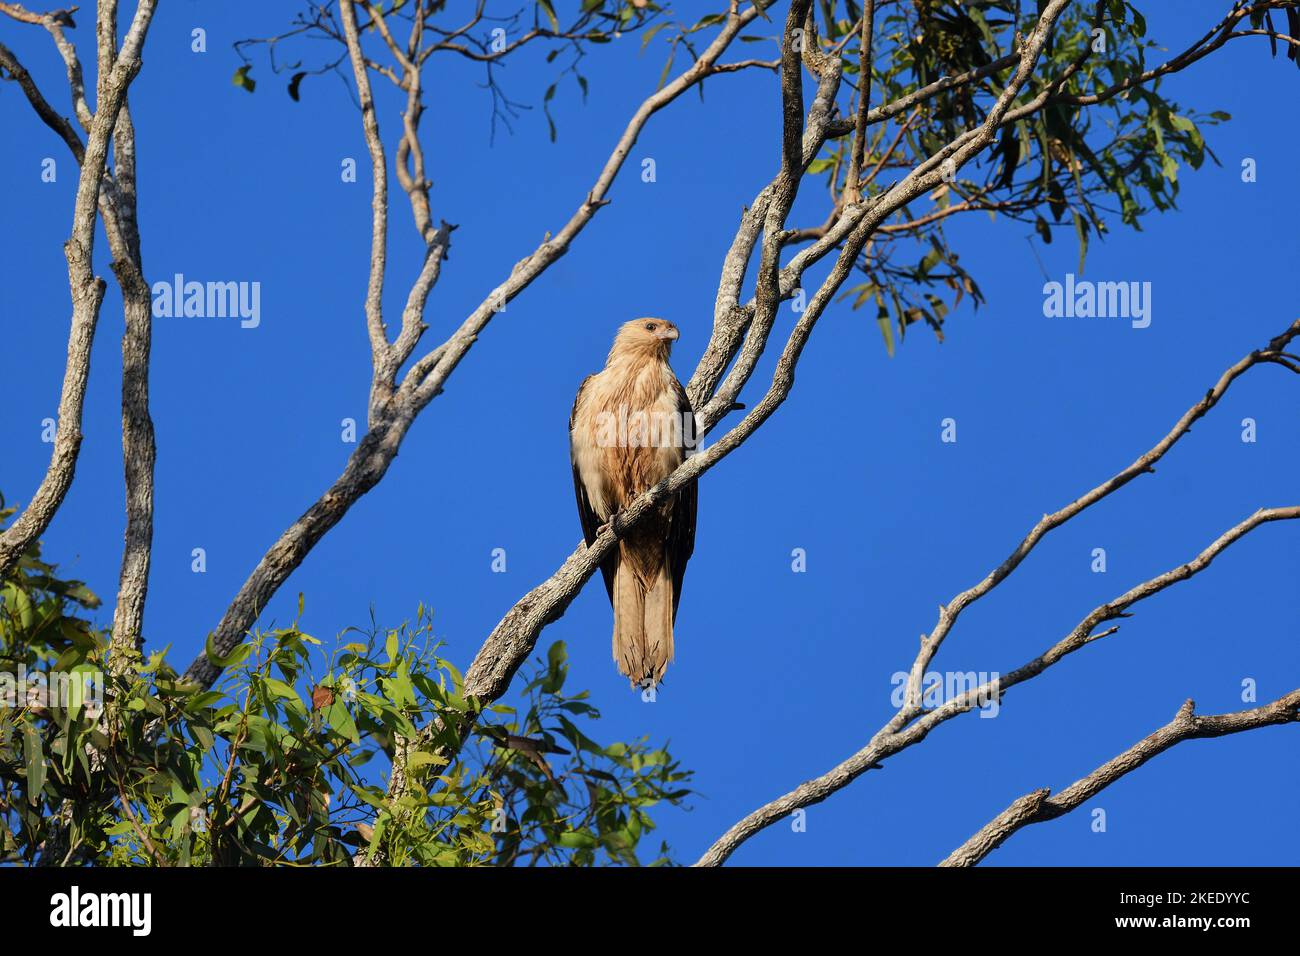 Un pájaro australiano adulto silbando Kite -Haliastur sphenurus- encaramado en lo alto de una rama de un árbol a la luz de la mañana en busca de una potencial presa Foto de stock